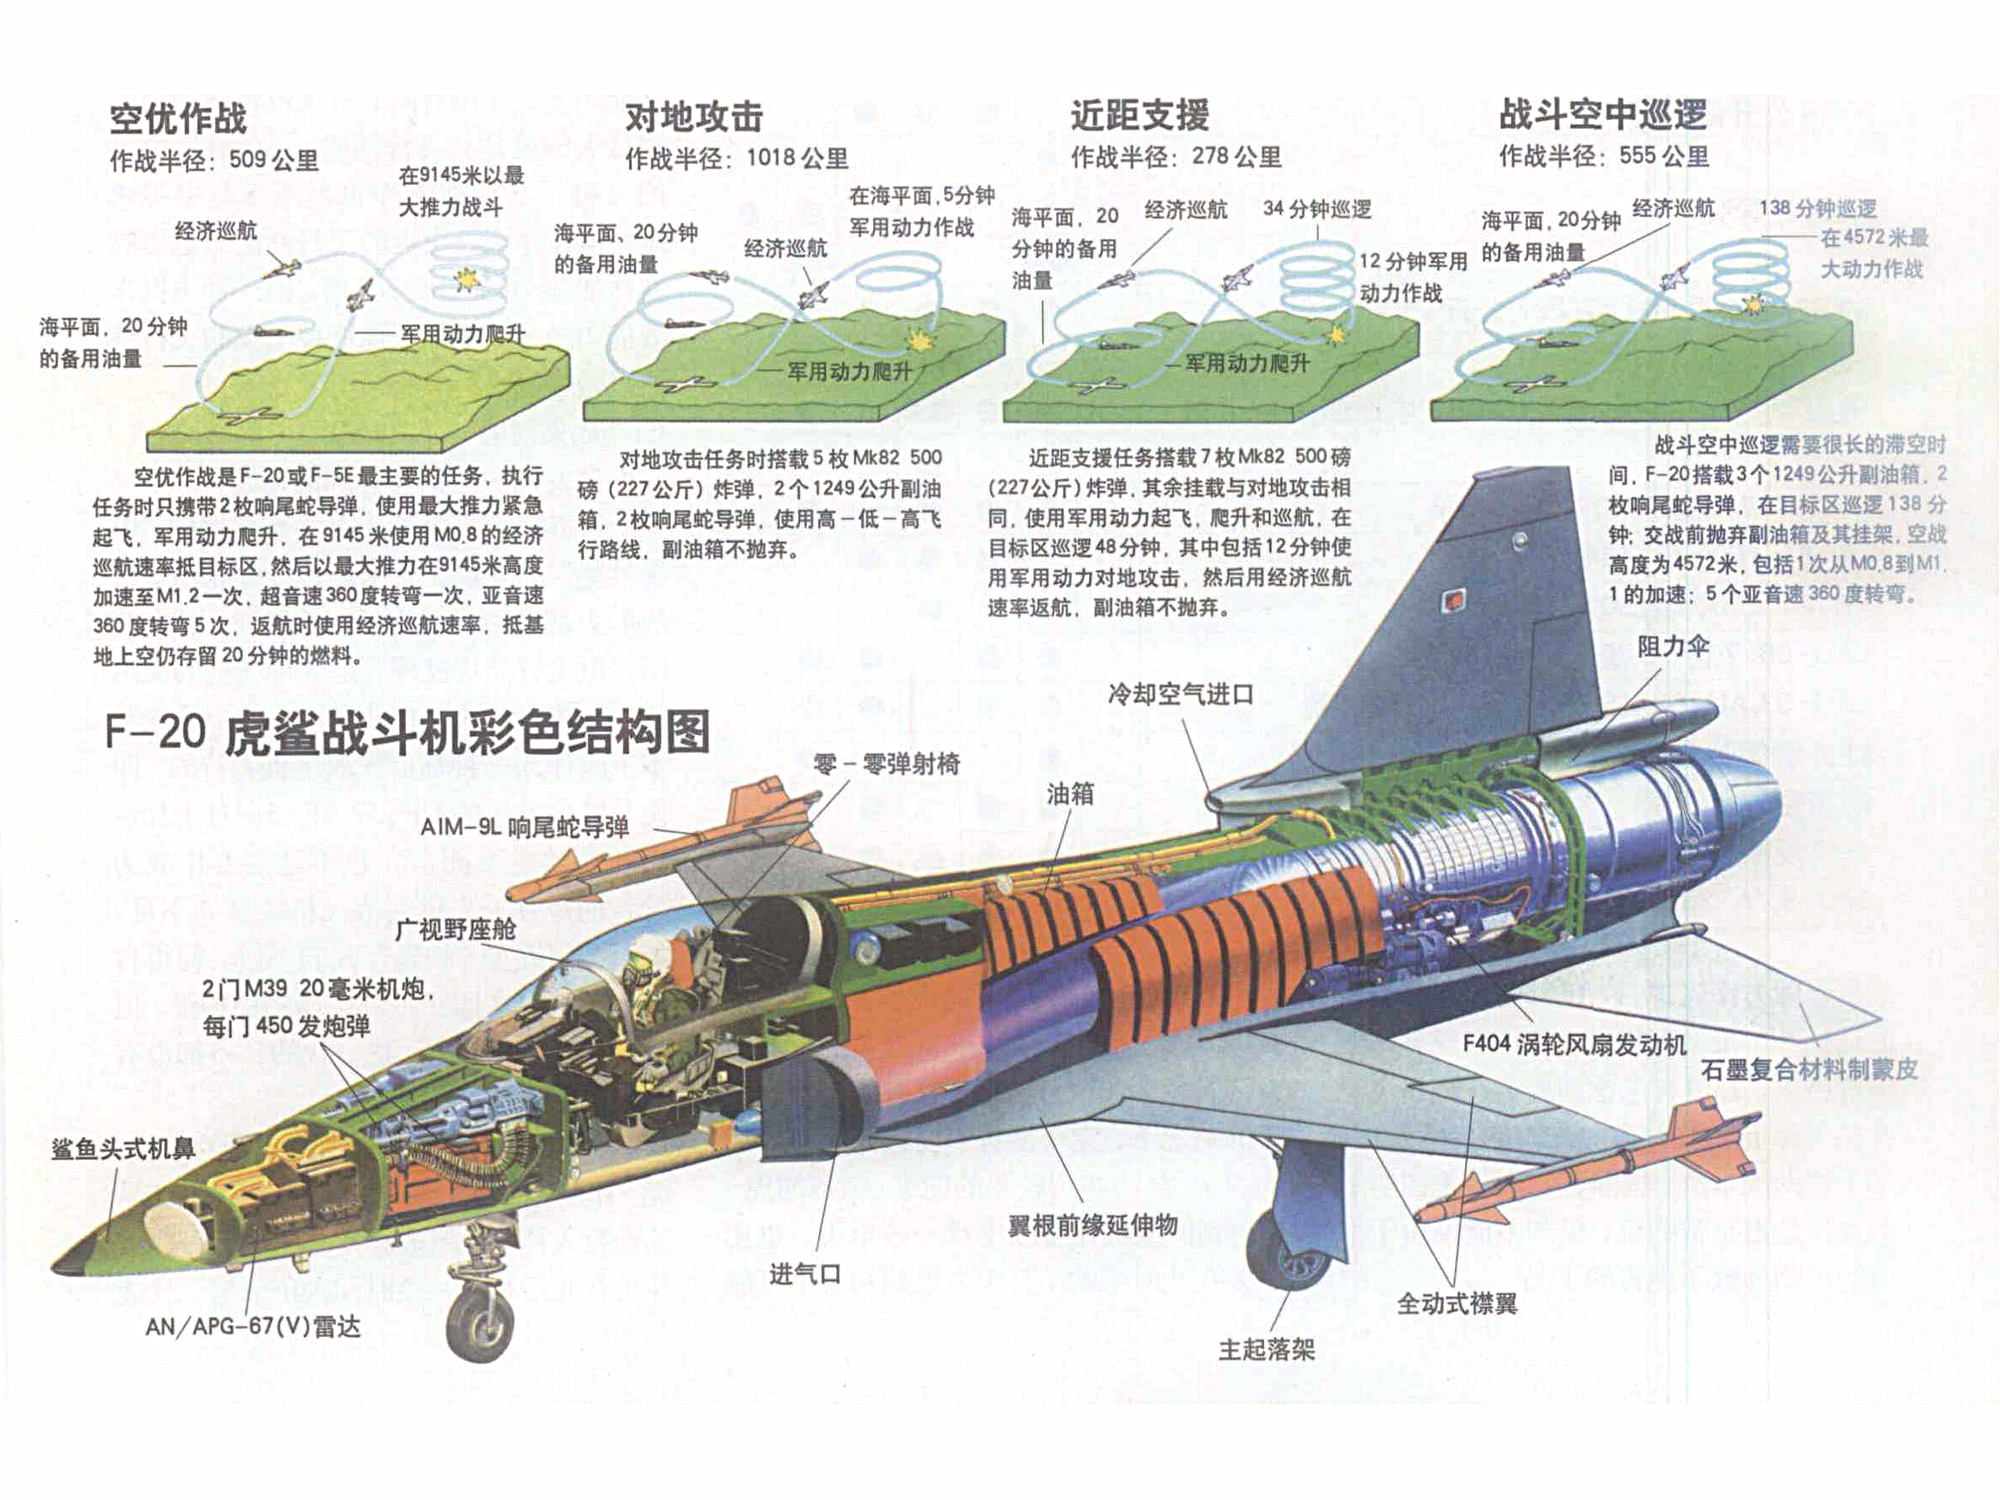 F-20戰鬥機結構示意圖